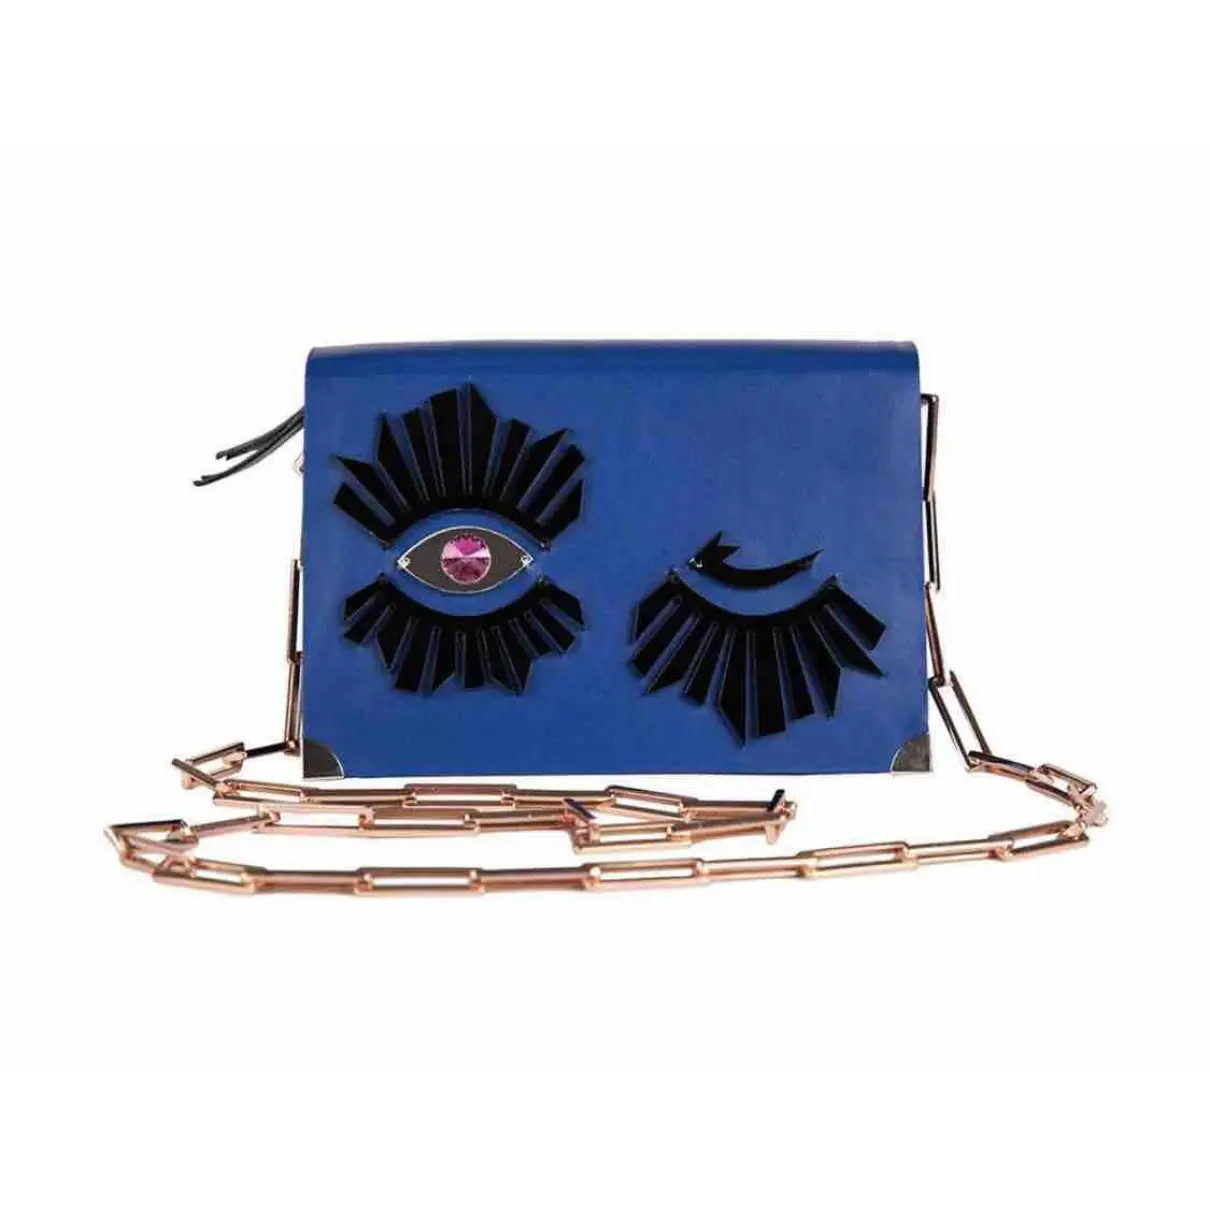 Luxury Benedetta Bruzziches Handbags Women